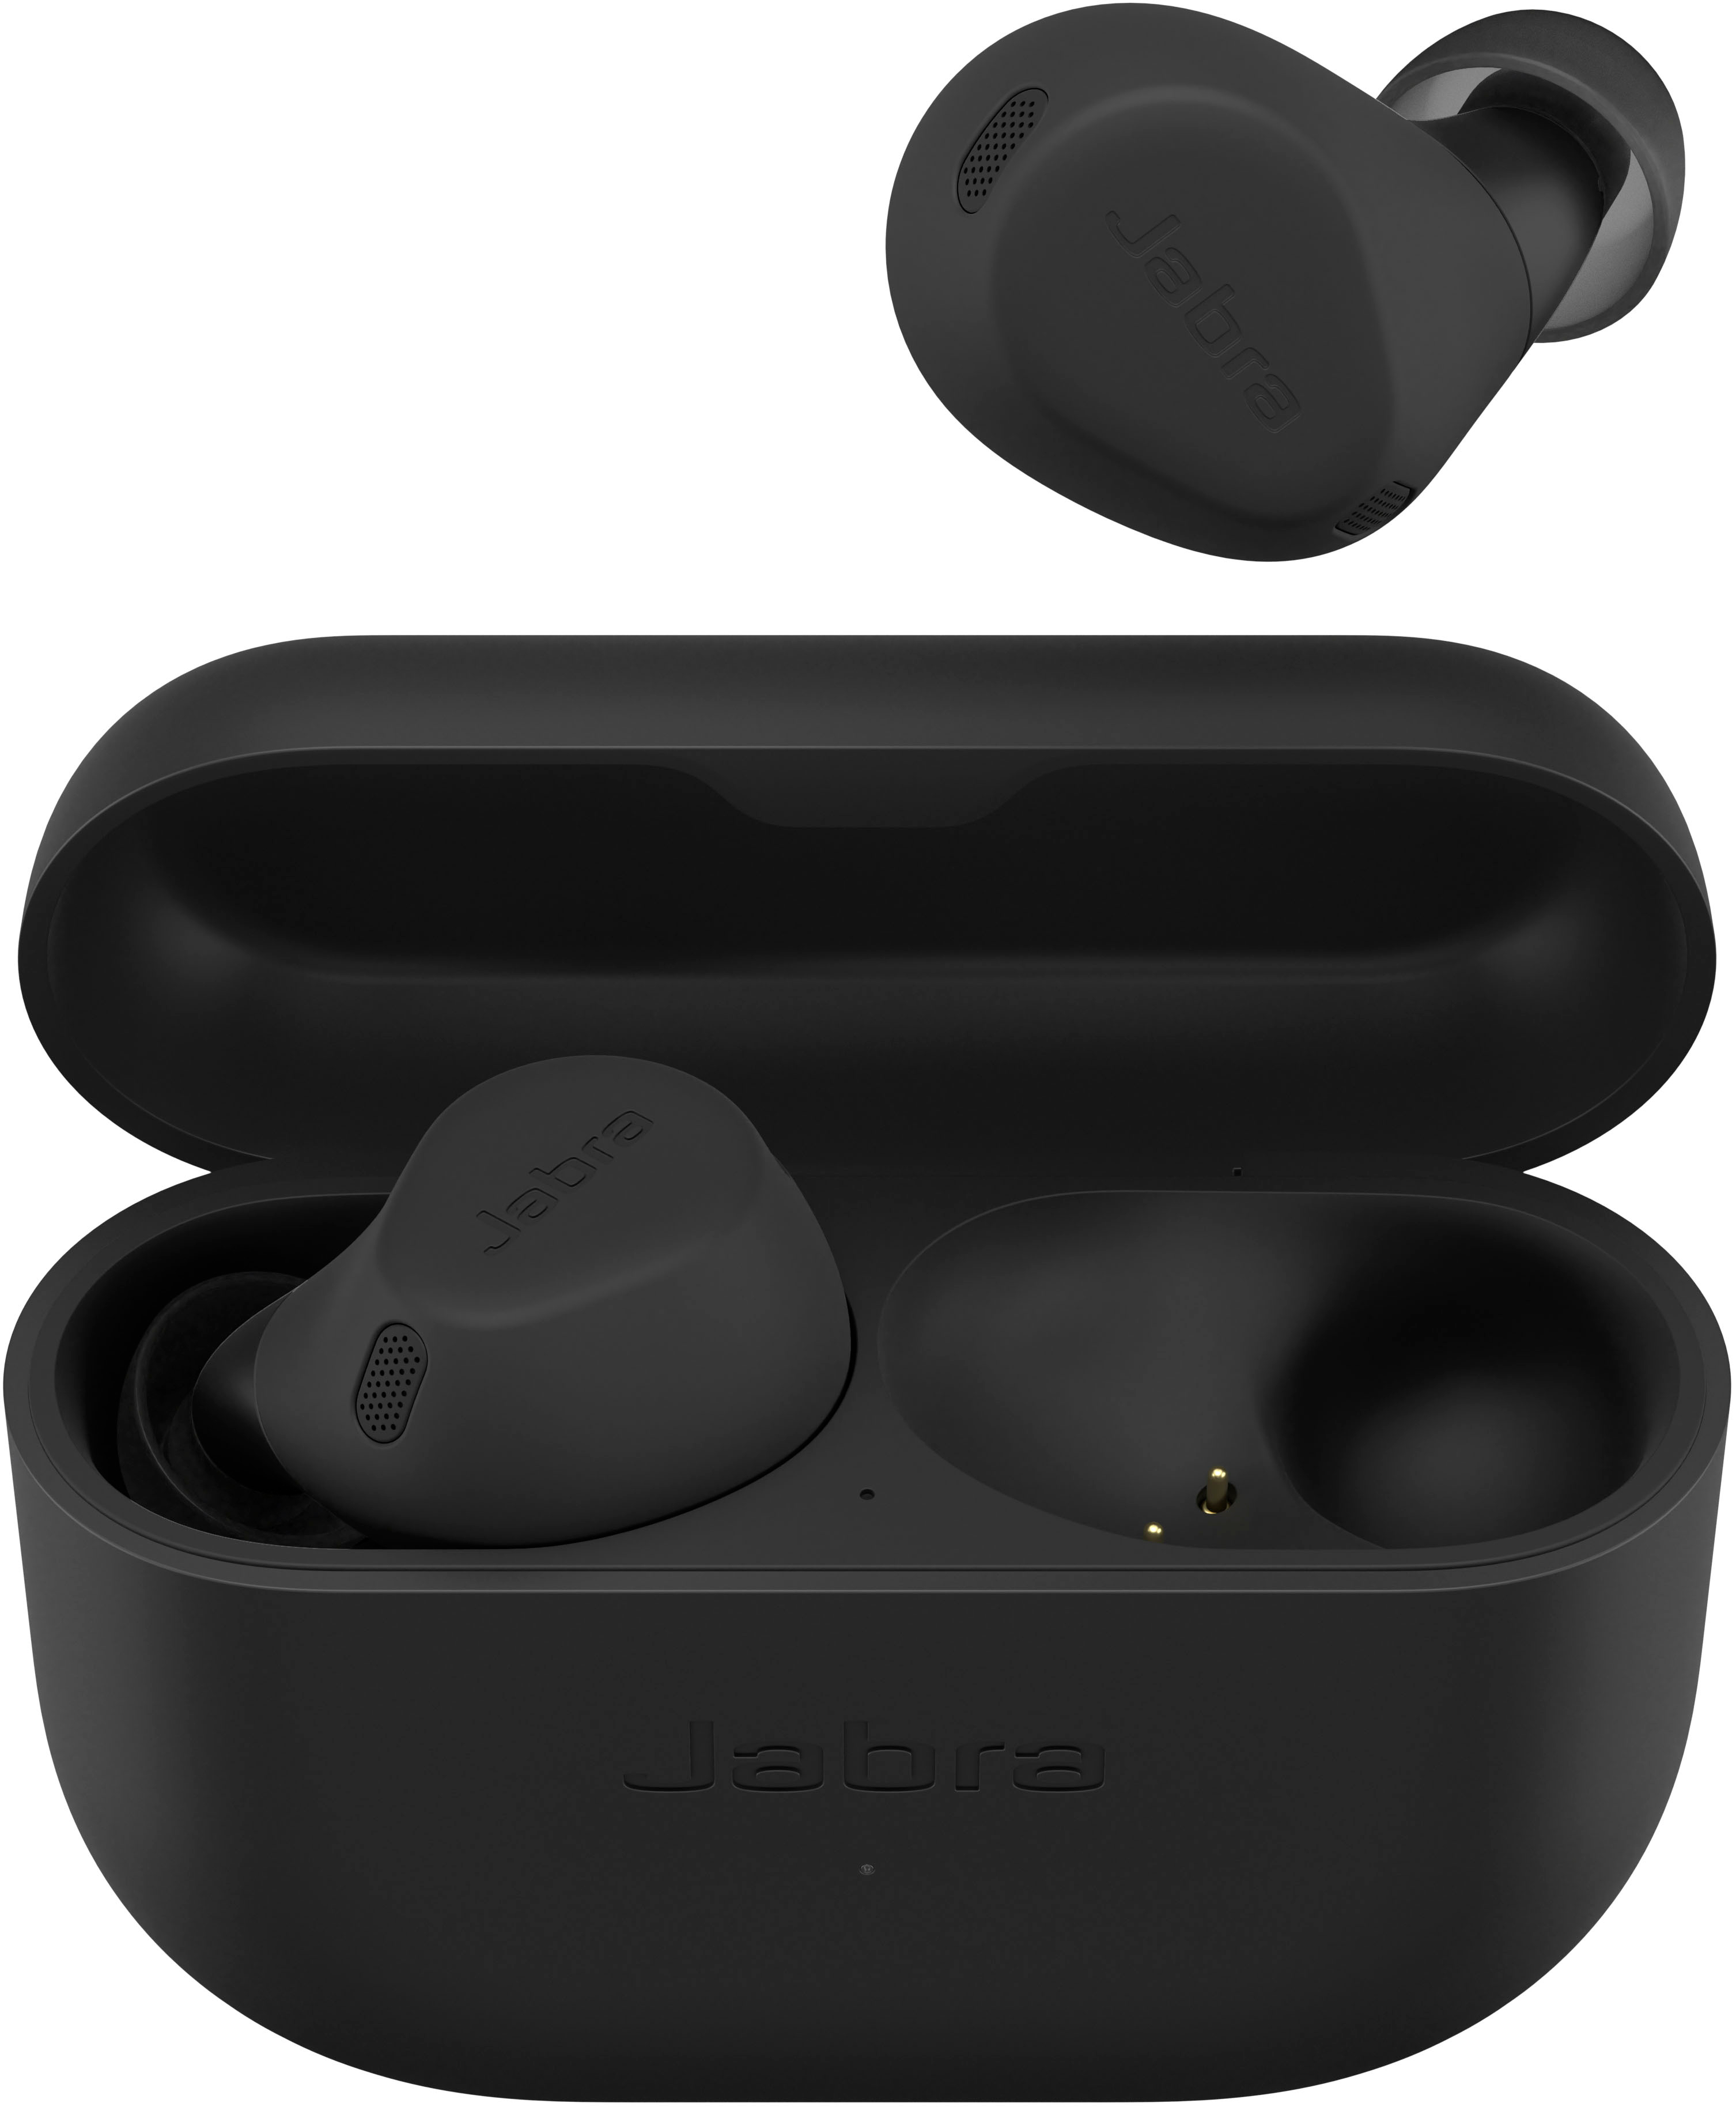 Jabra Elite 8 Active Military Grade True Wireless Headphones Black  100-99160900-99 - Best Buy